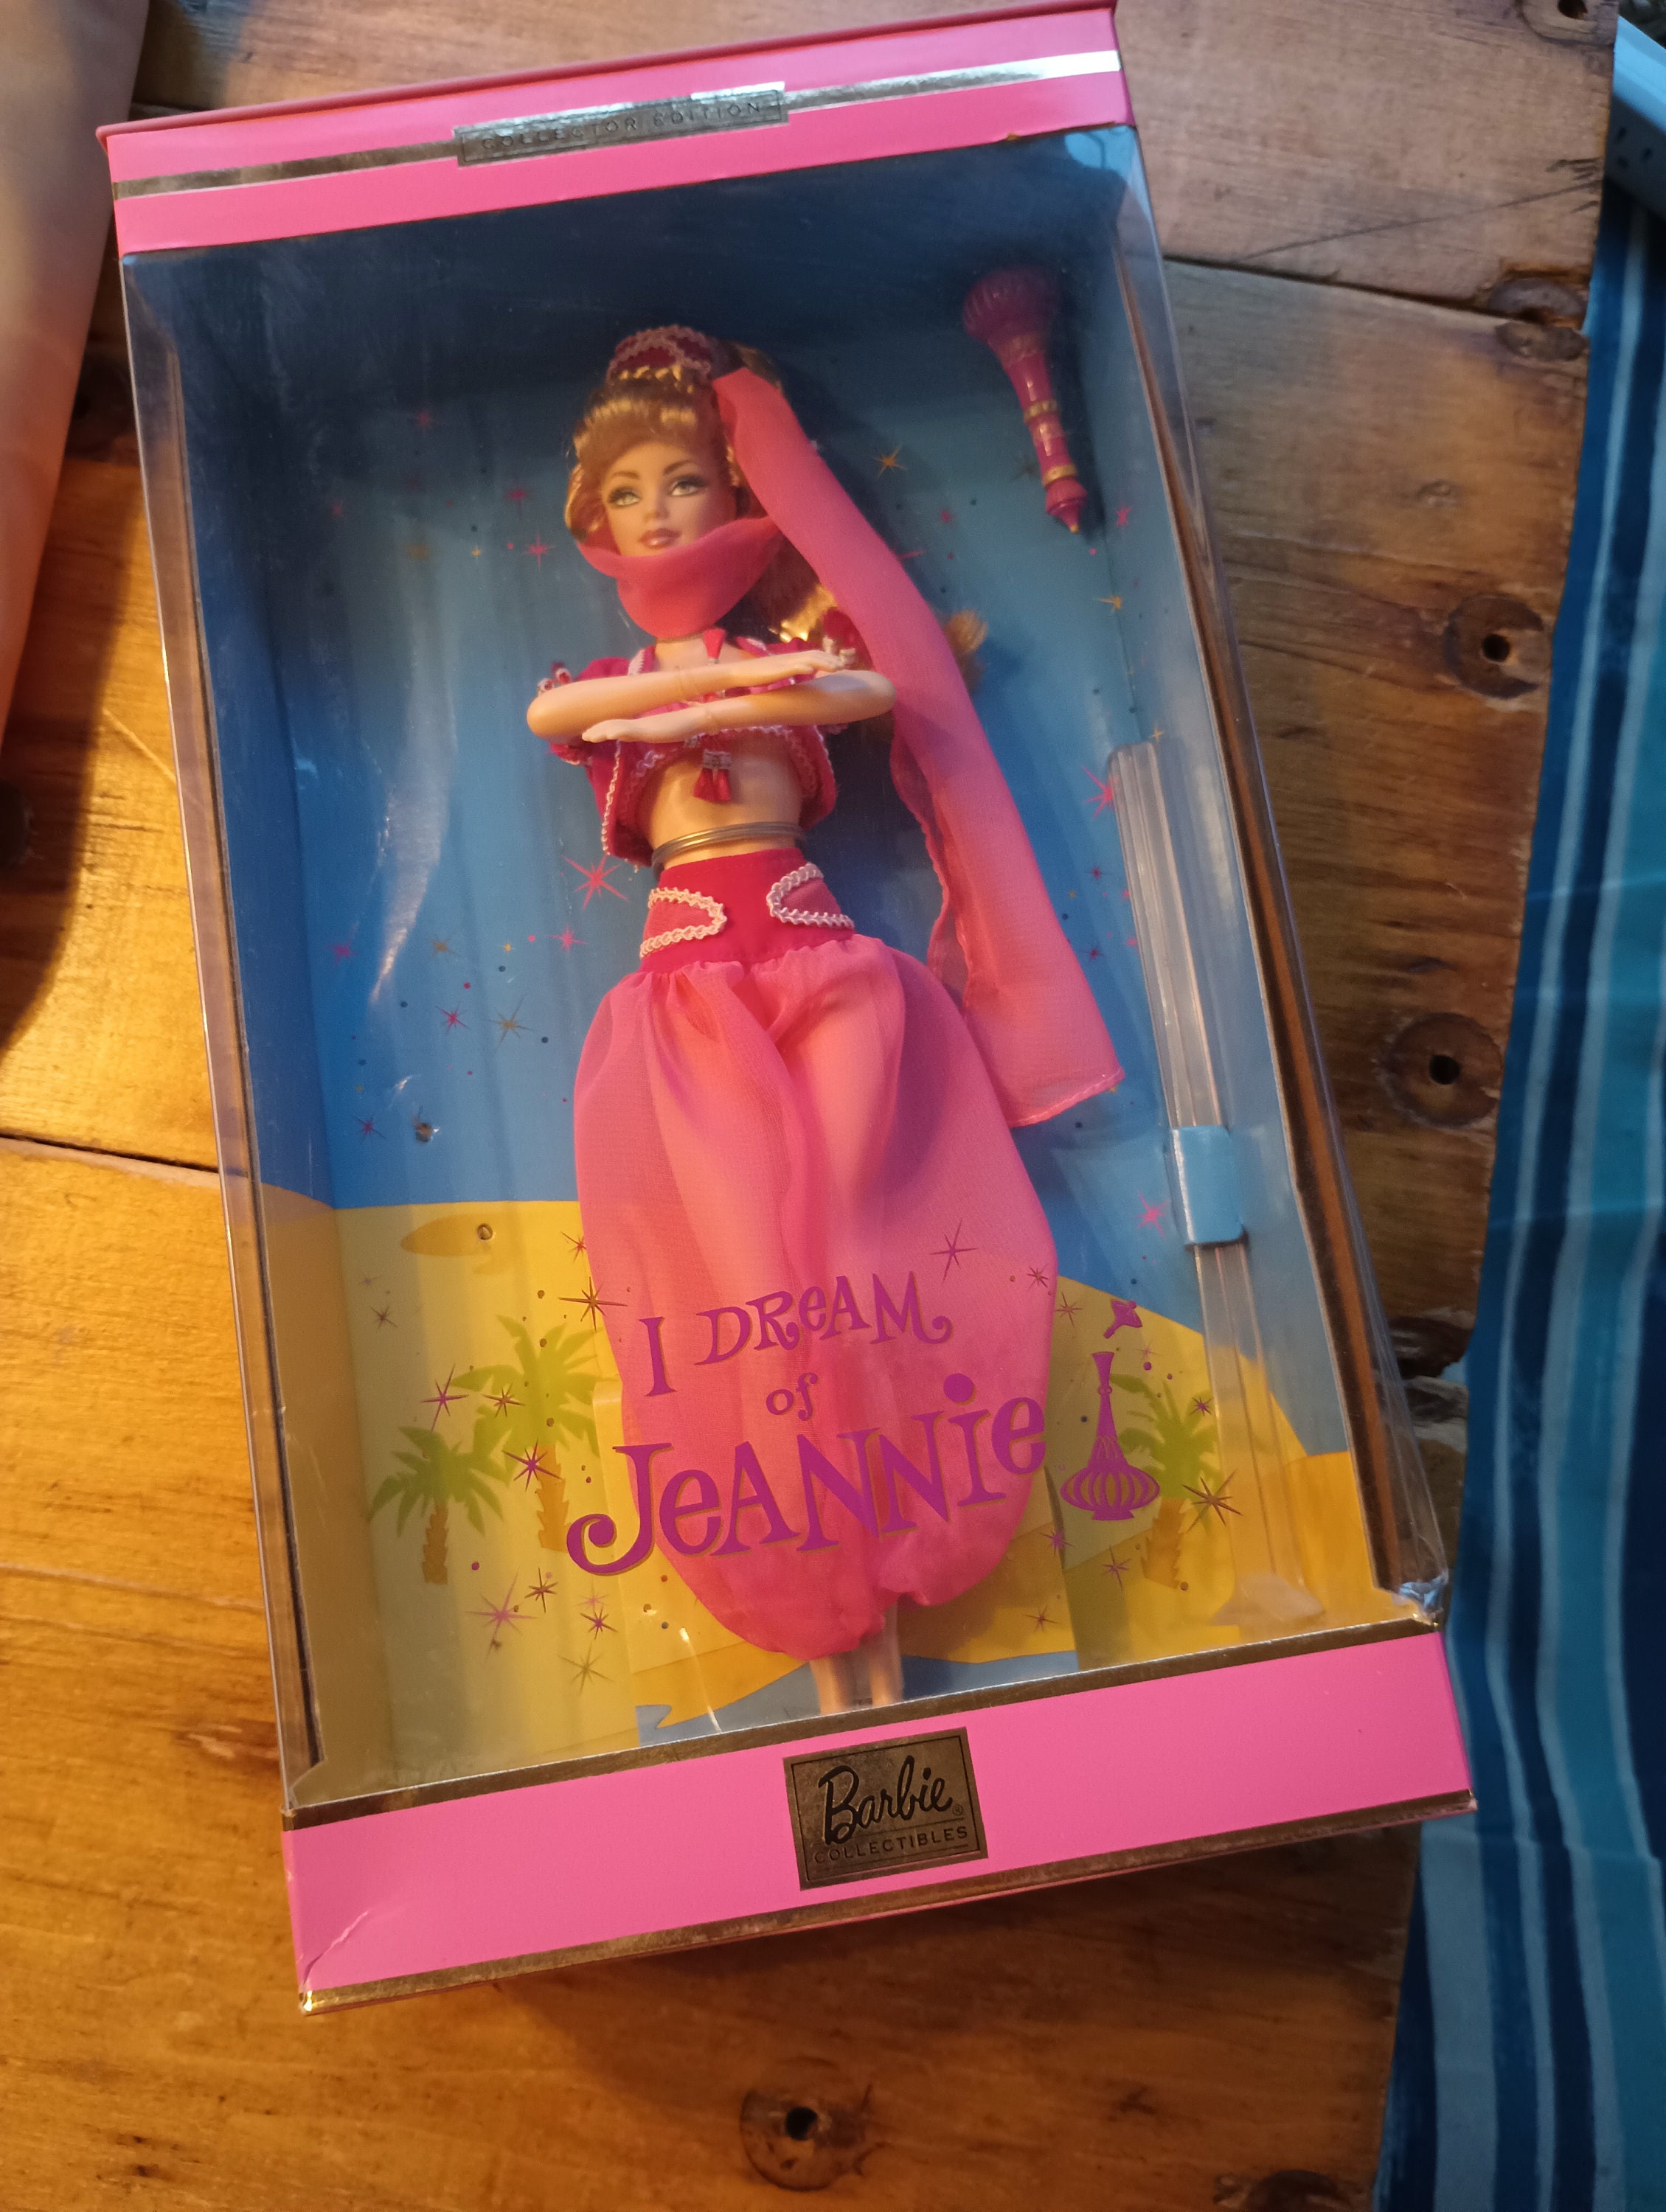 Barbie: Confira 5 jogos baseados no mundo da boneca